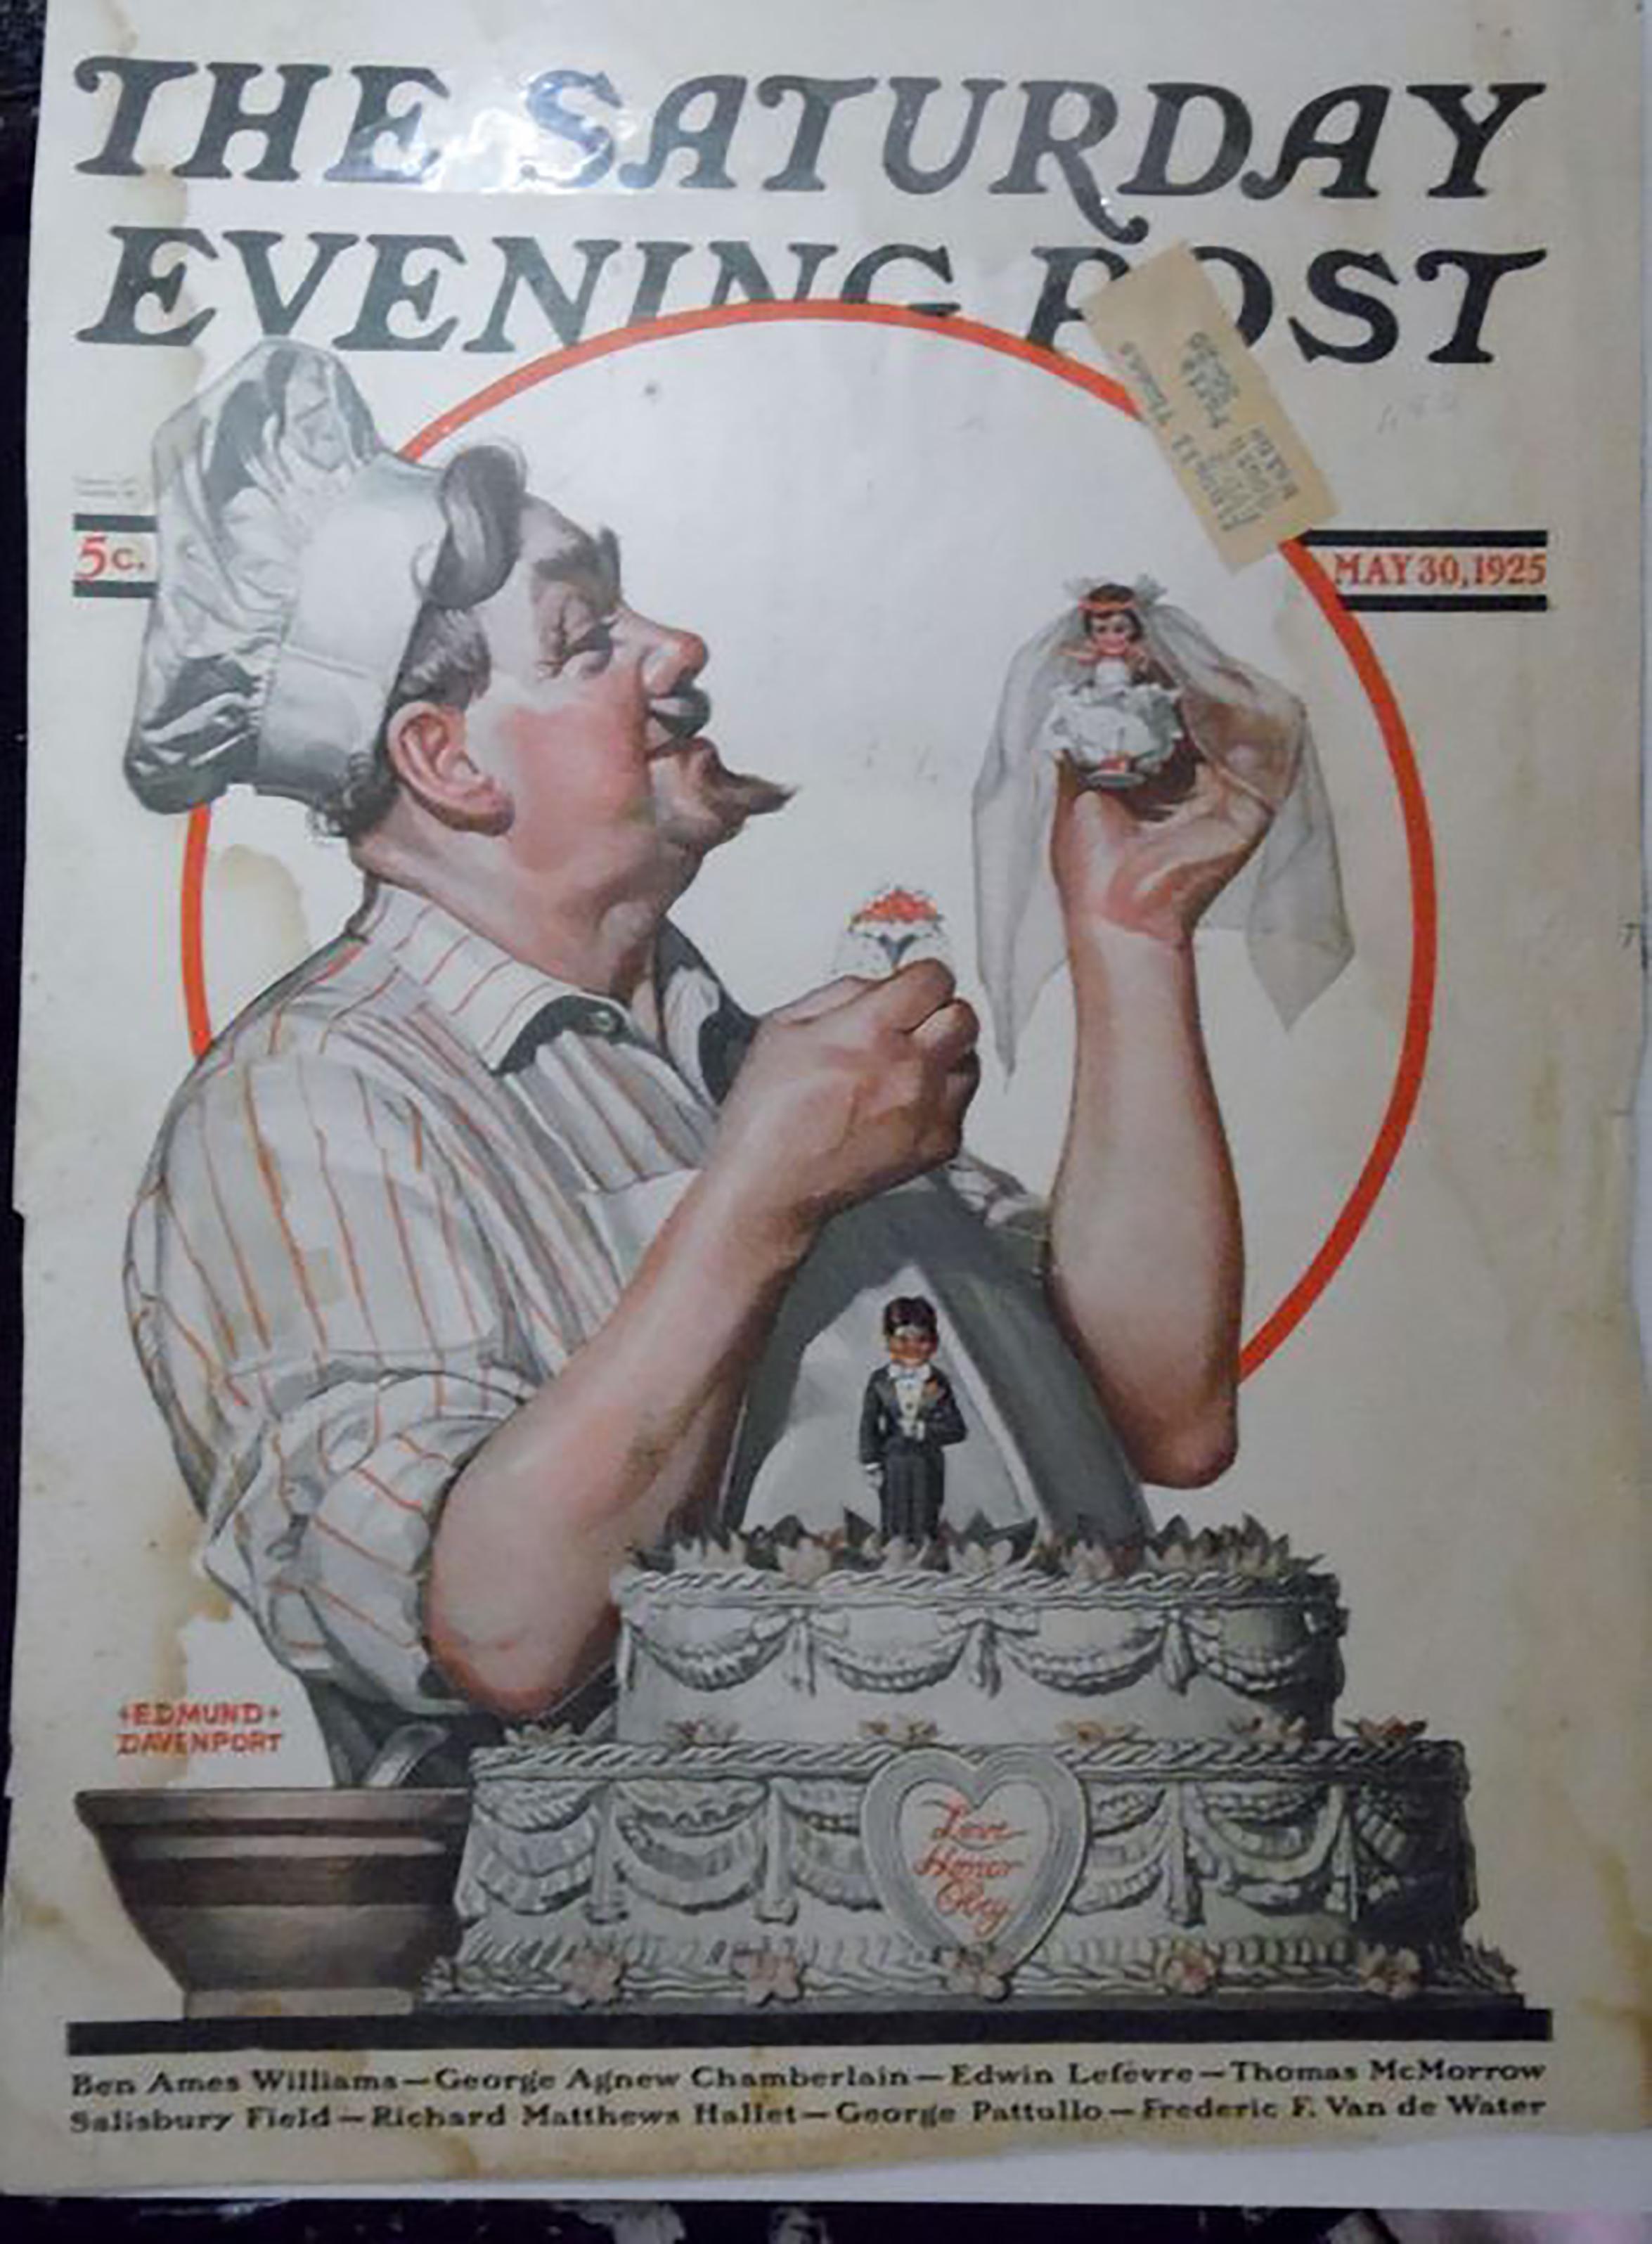 Le Chef et le gâteau de mariage, couverture de table de soirée du samedi - Gris Figurative Painting par Edmund Davenport